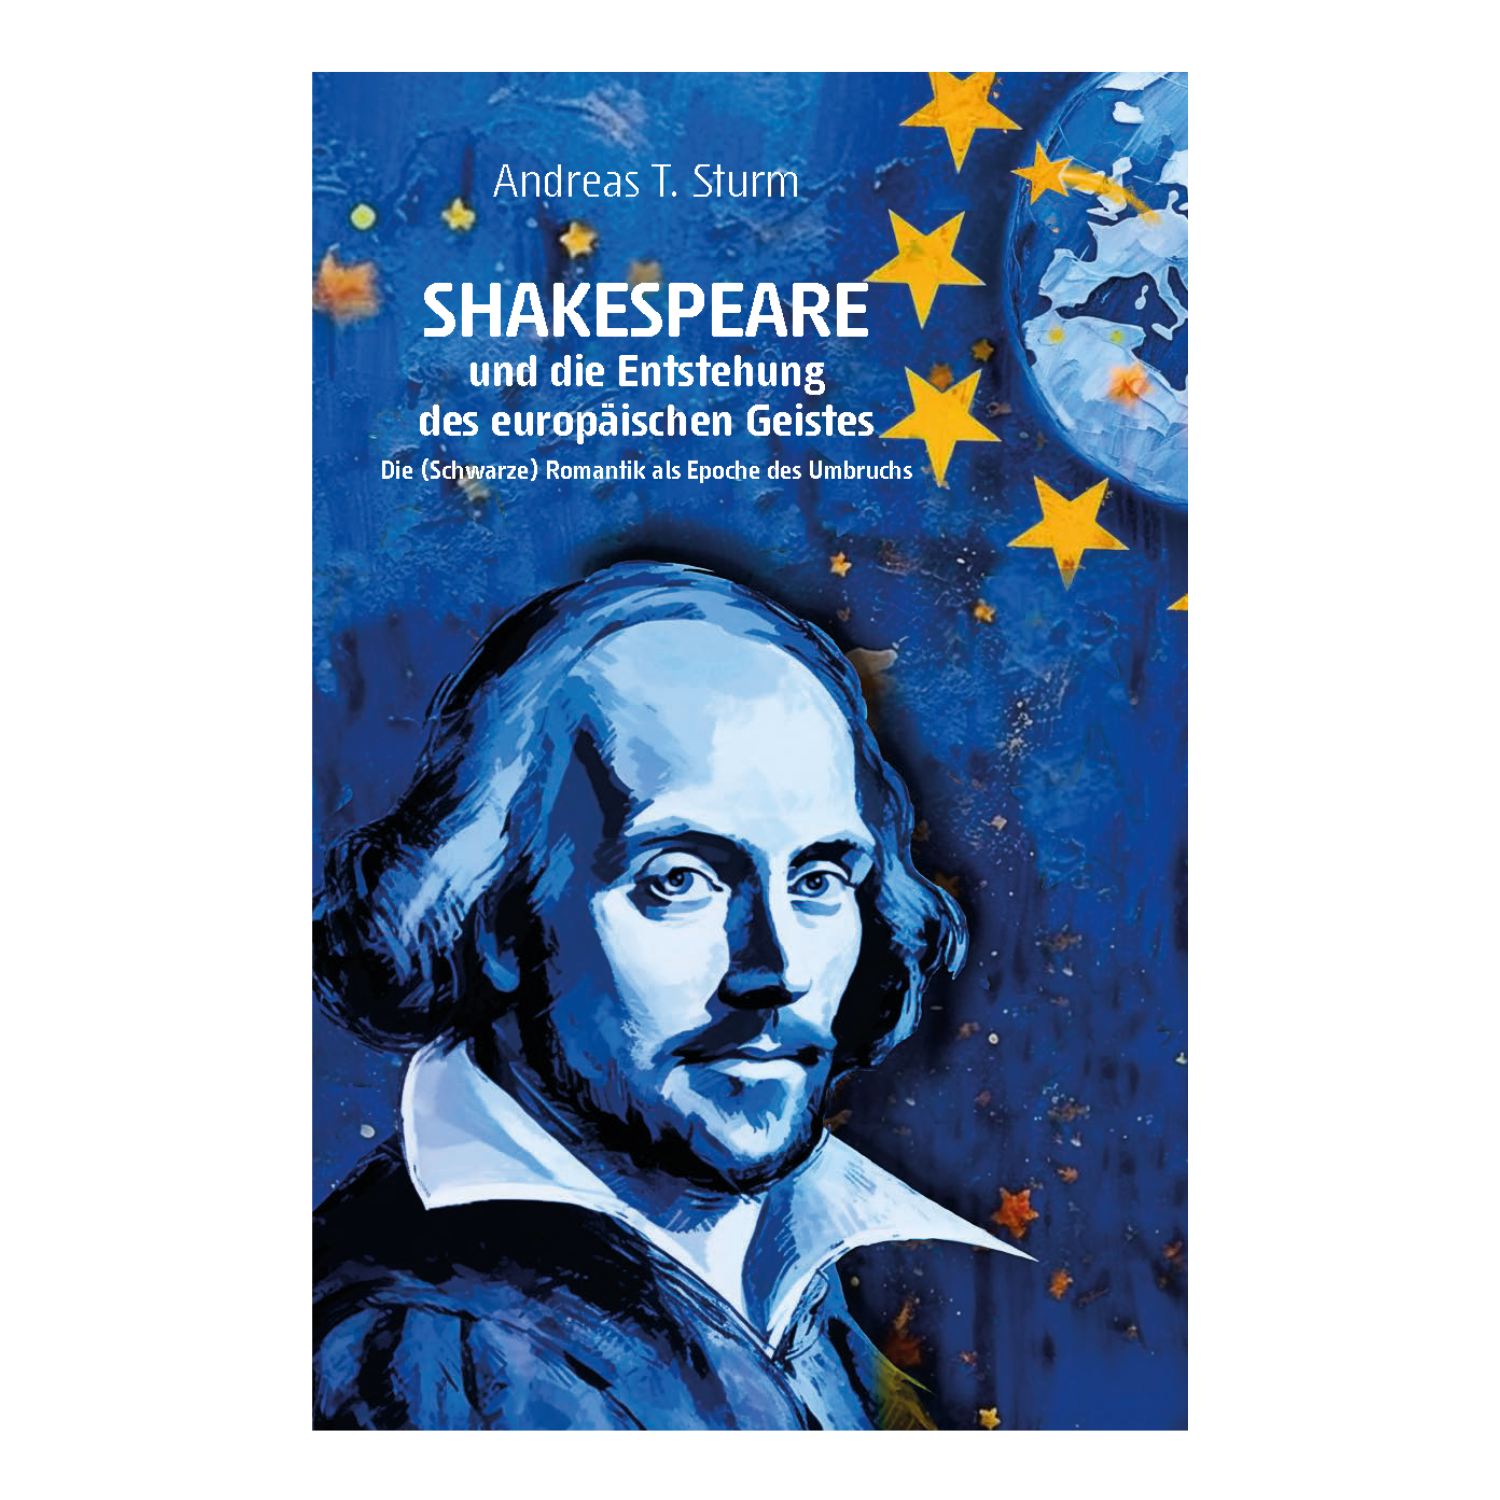 Shakespeare und die Entstehung des europäischen Geistes (Andreas T. Sturm)